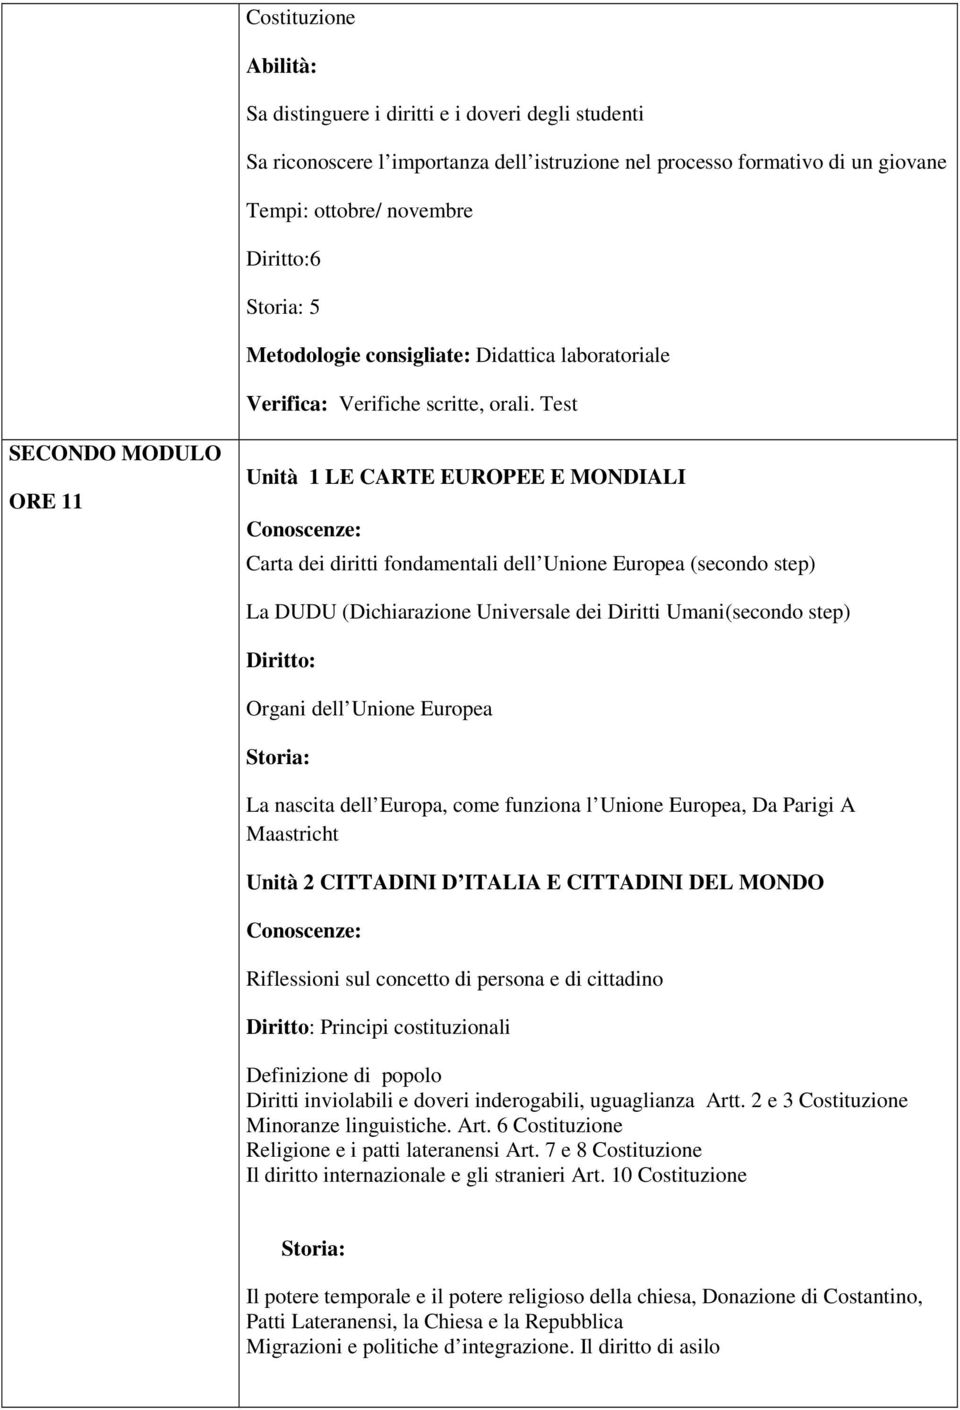 Test SECONDO MODULO ORE 11 Unità 1 LE CARTE EUROPEE E MONDIALI : Carta dei diritti fondamentali dell Unione Europea (secondo step) La DUDU (Dichiarazione Universale dei Diritti Umani(secondo step)